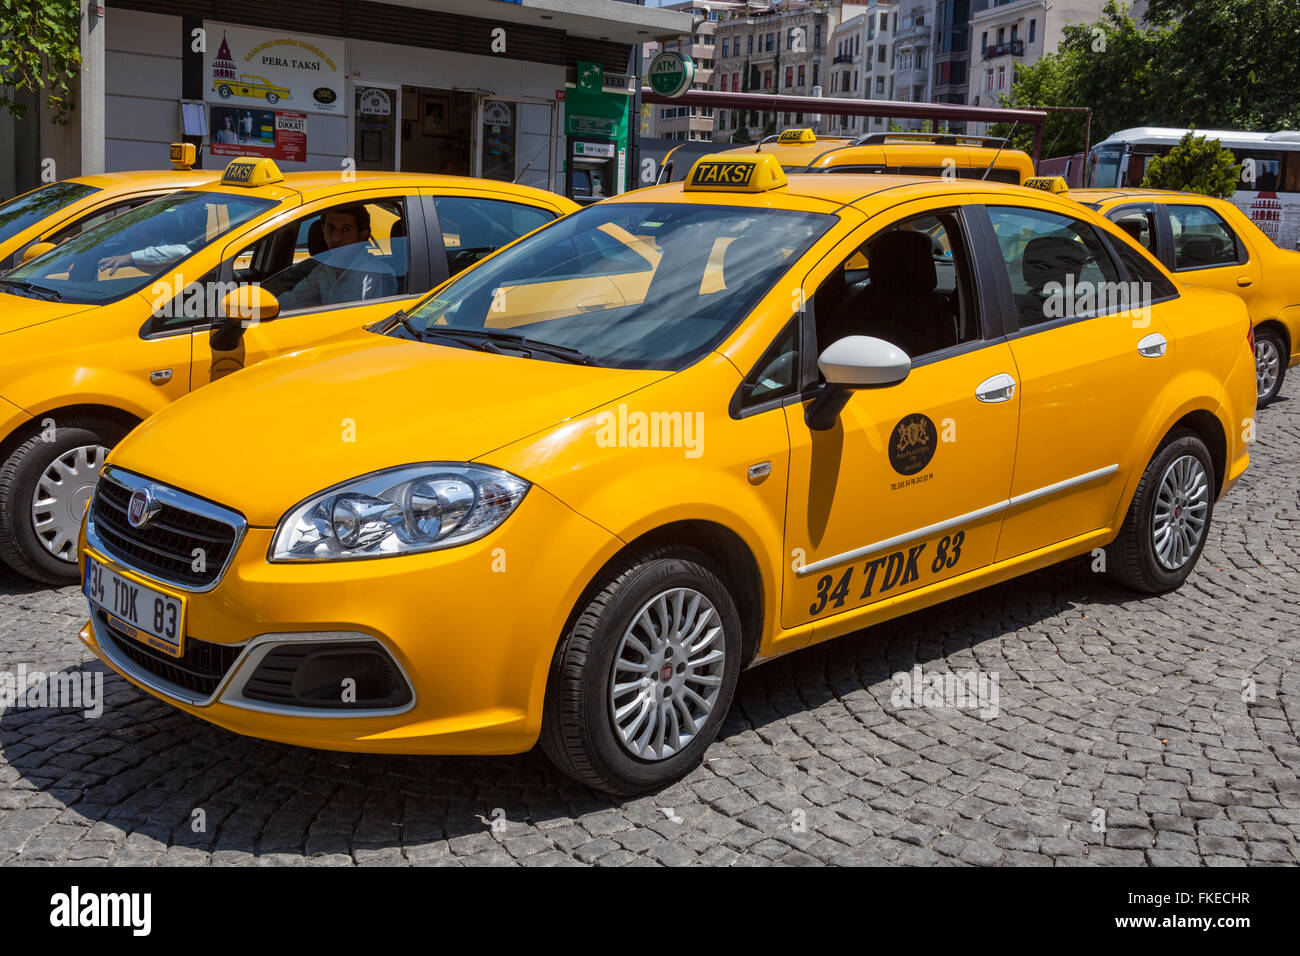 taxis istanbul turkey stock photo alamy